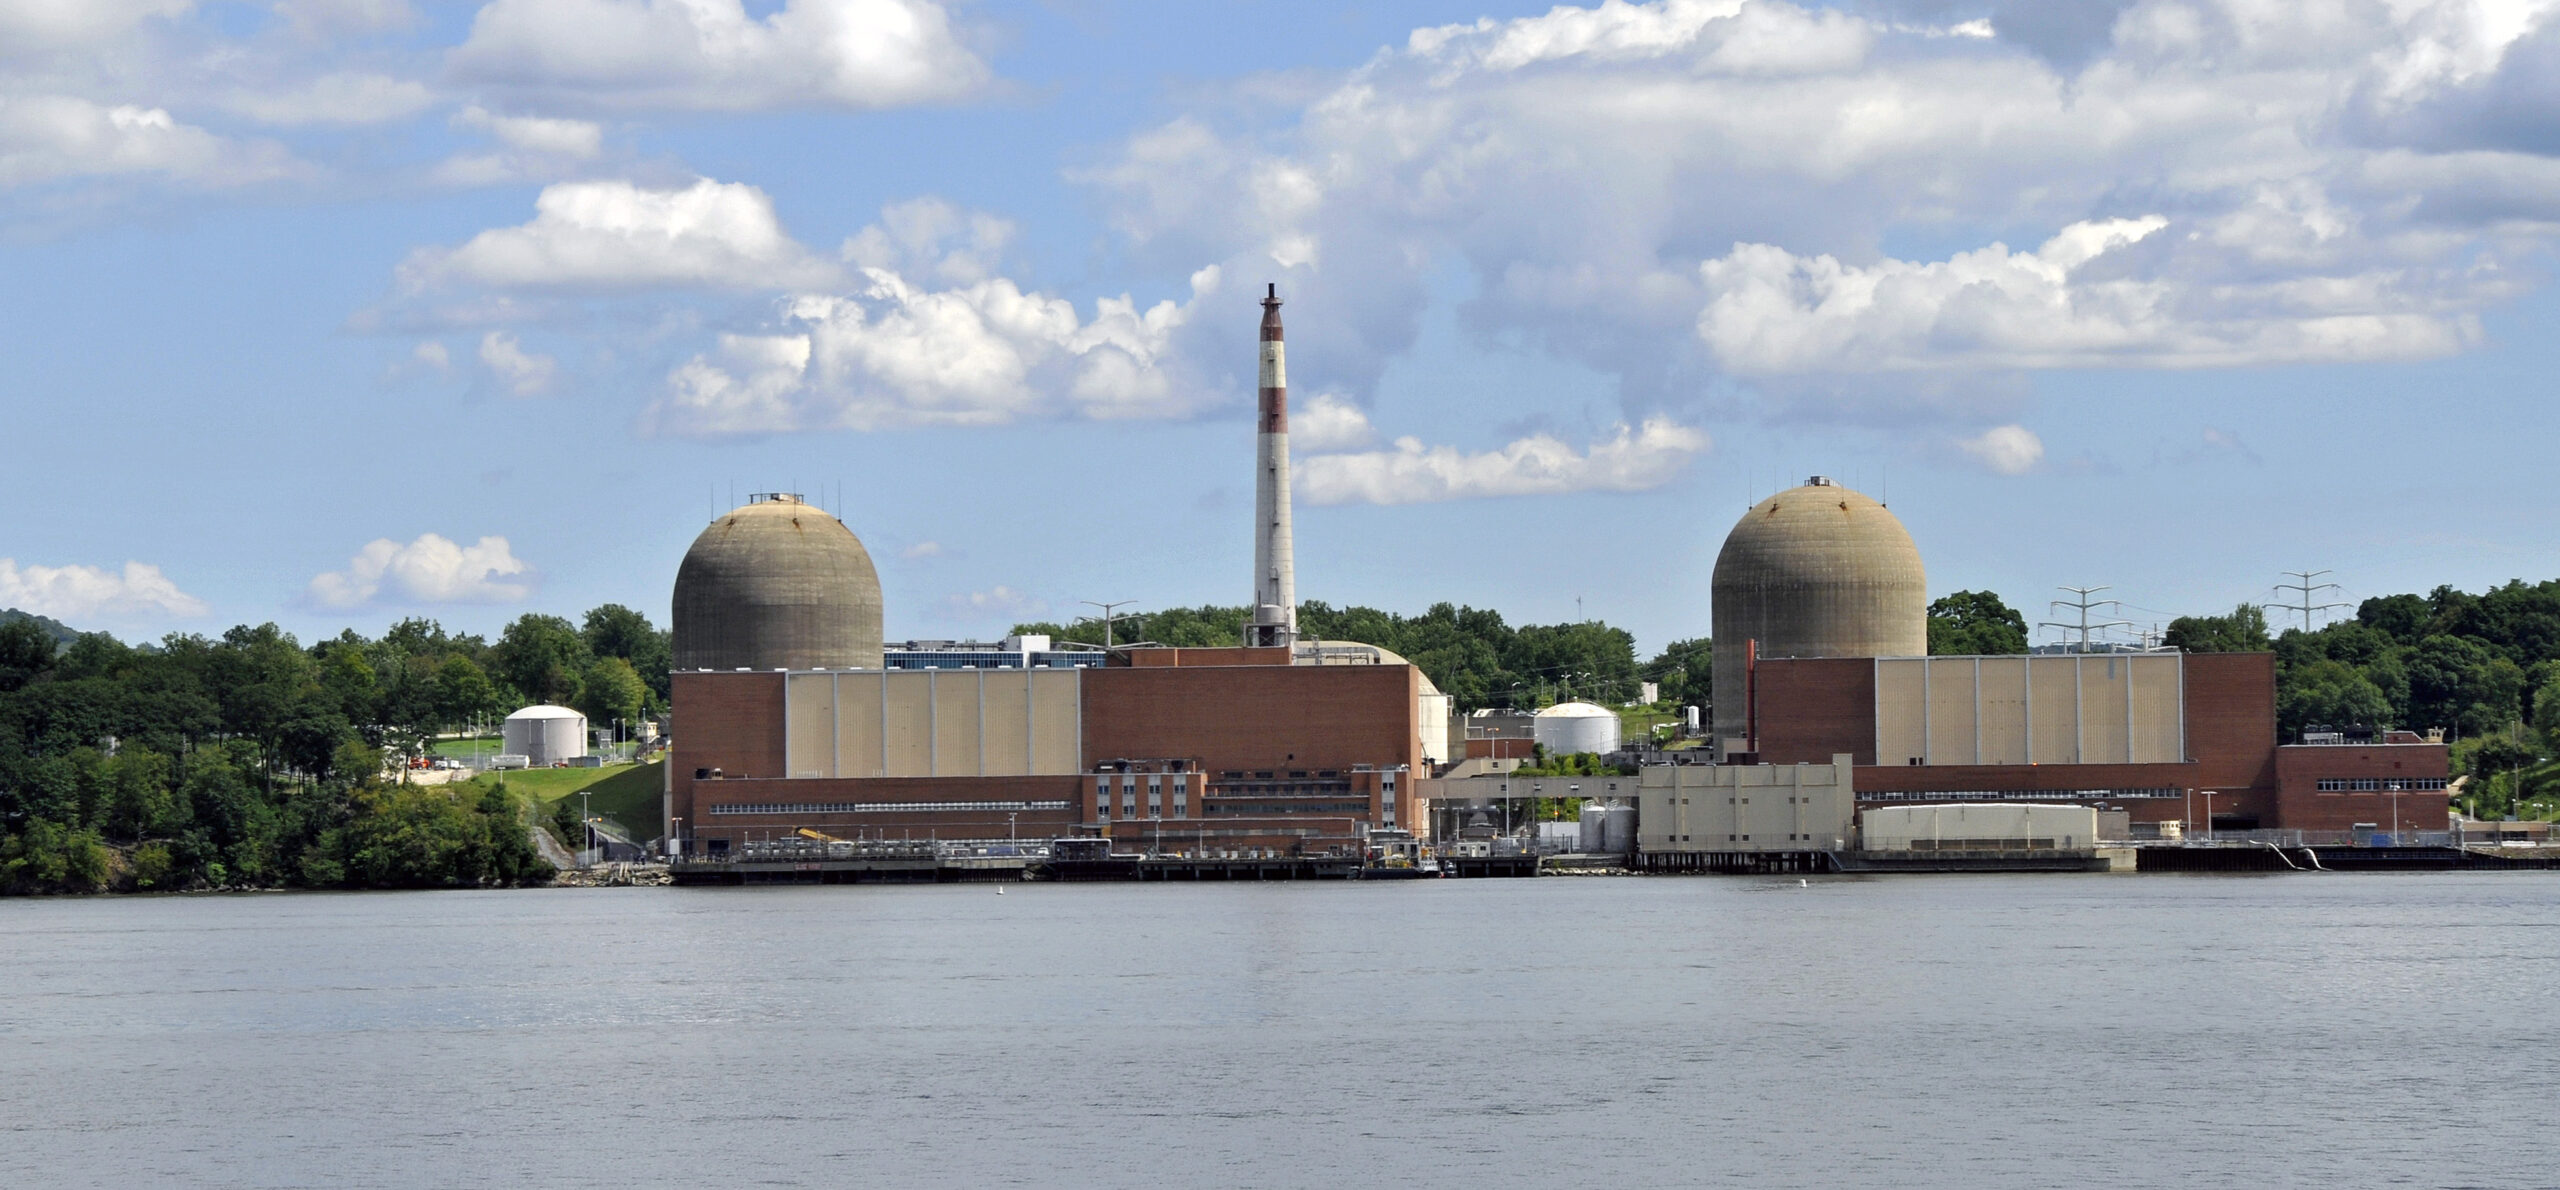 Indian Point Energy Center, në Buchanan në shtetin amerikan të Nju Jorkut, ishte vendi i reaktorit të parë të toriumit në botë.